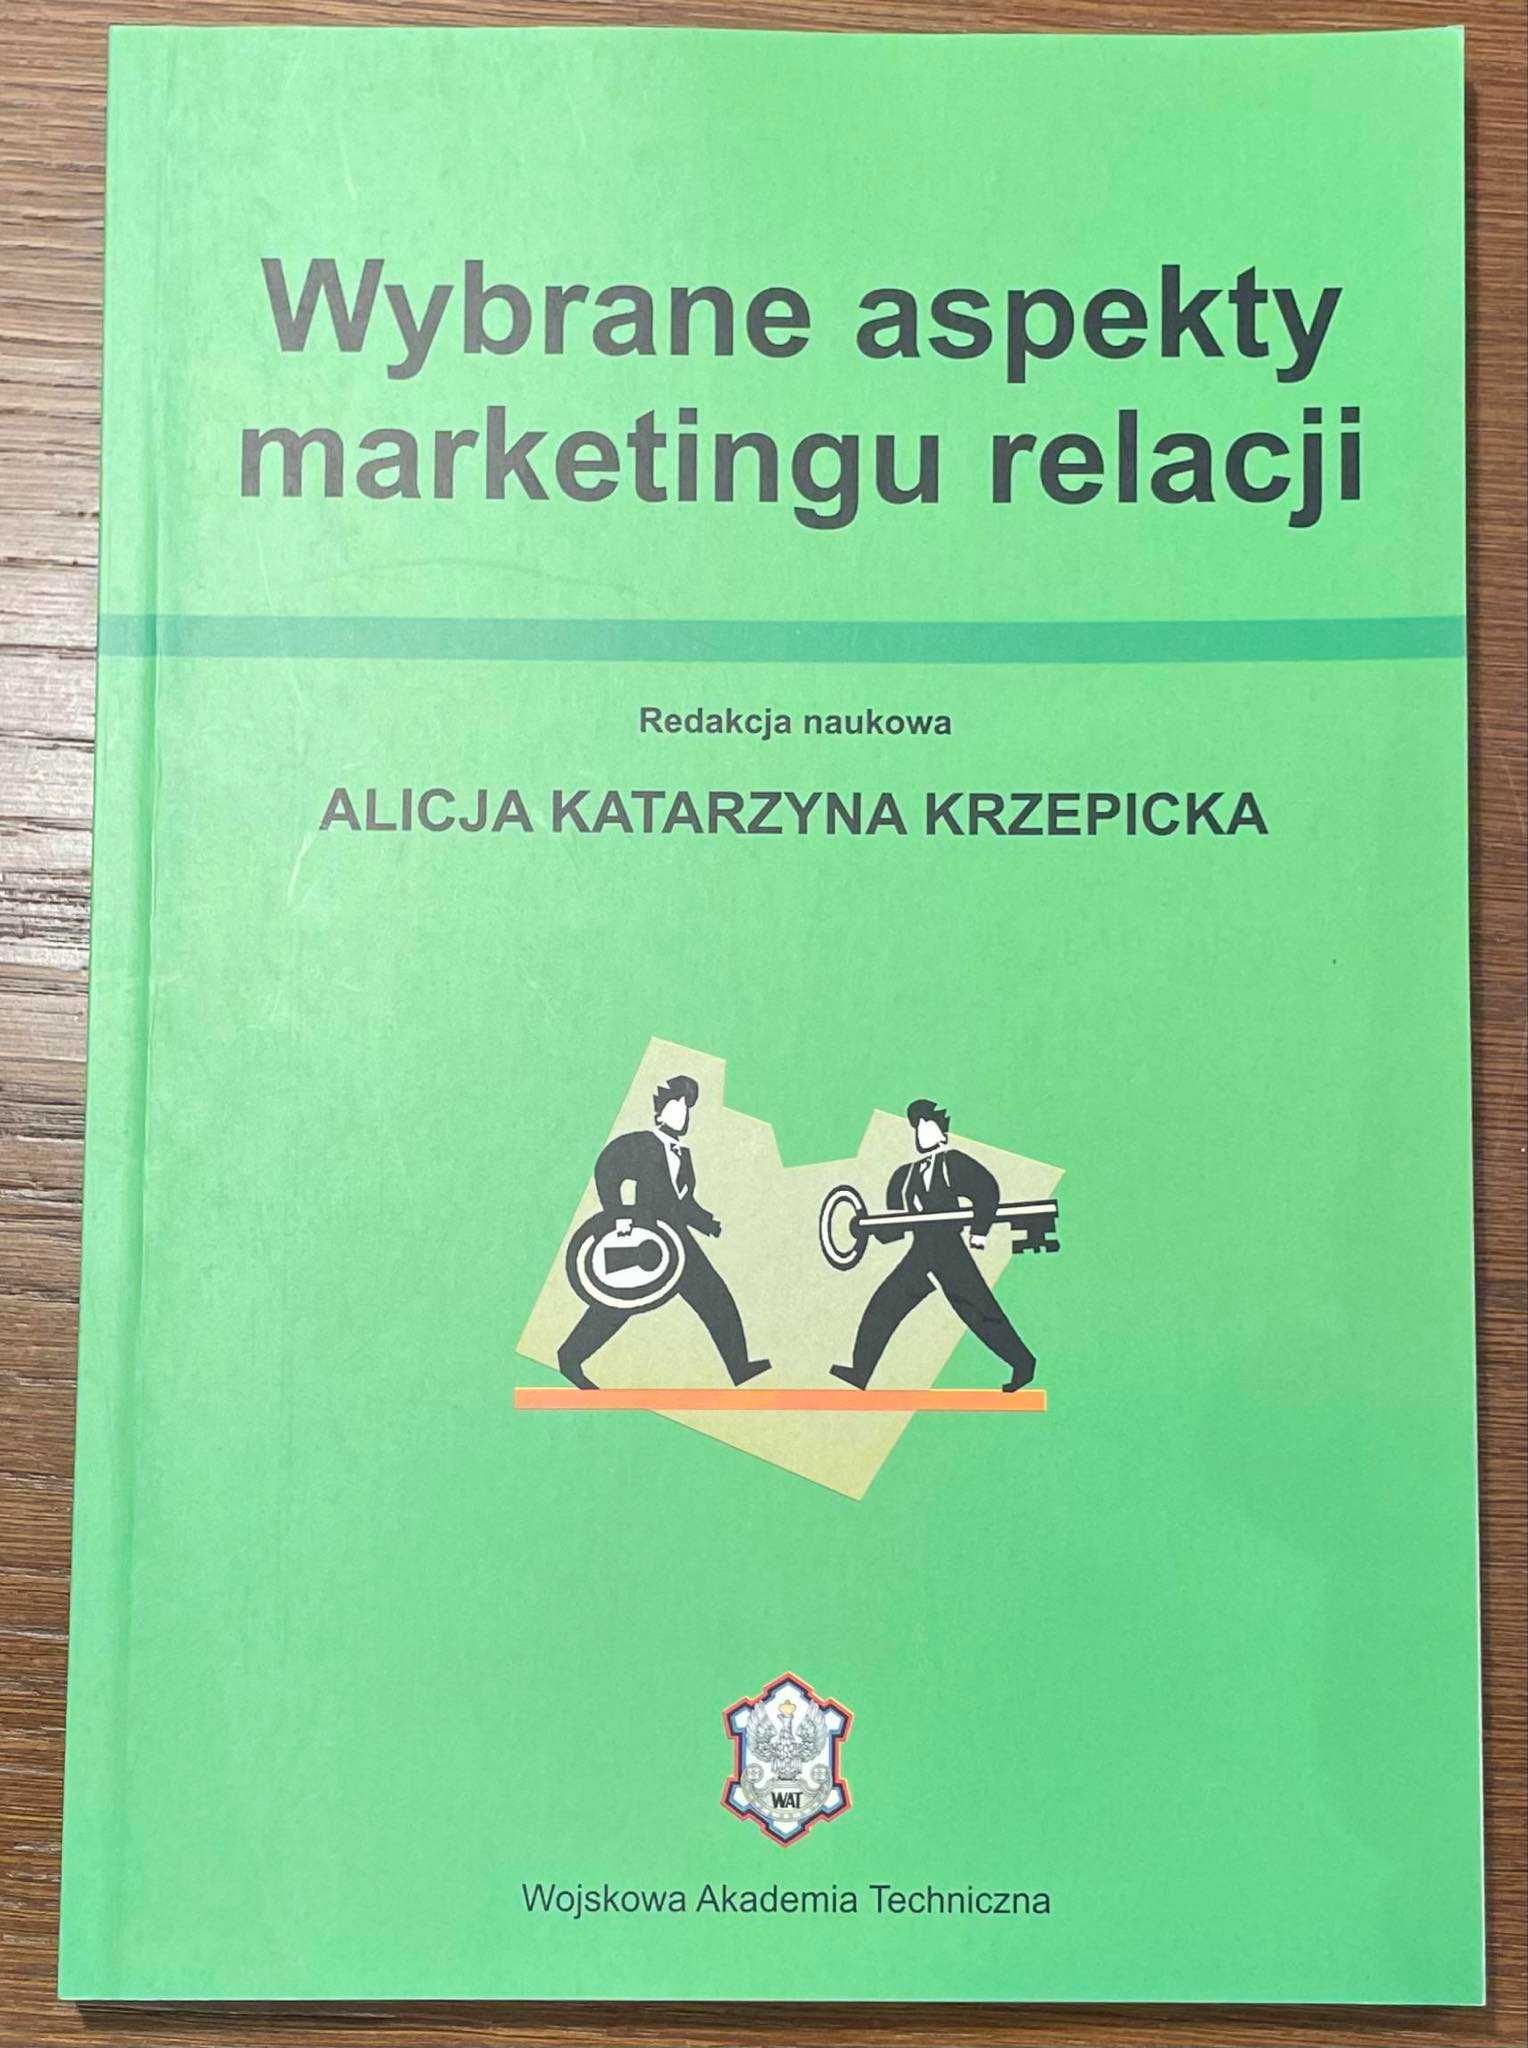 Wybrane aspekty marketingu relacji Alicja K. Krzepicka